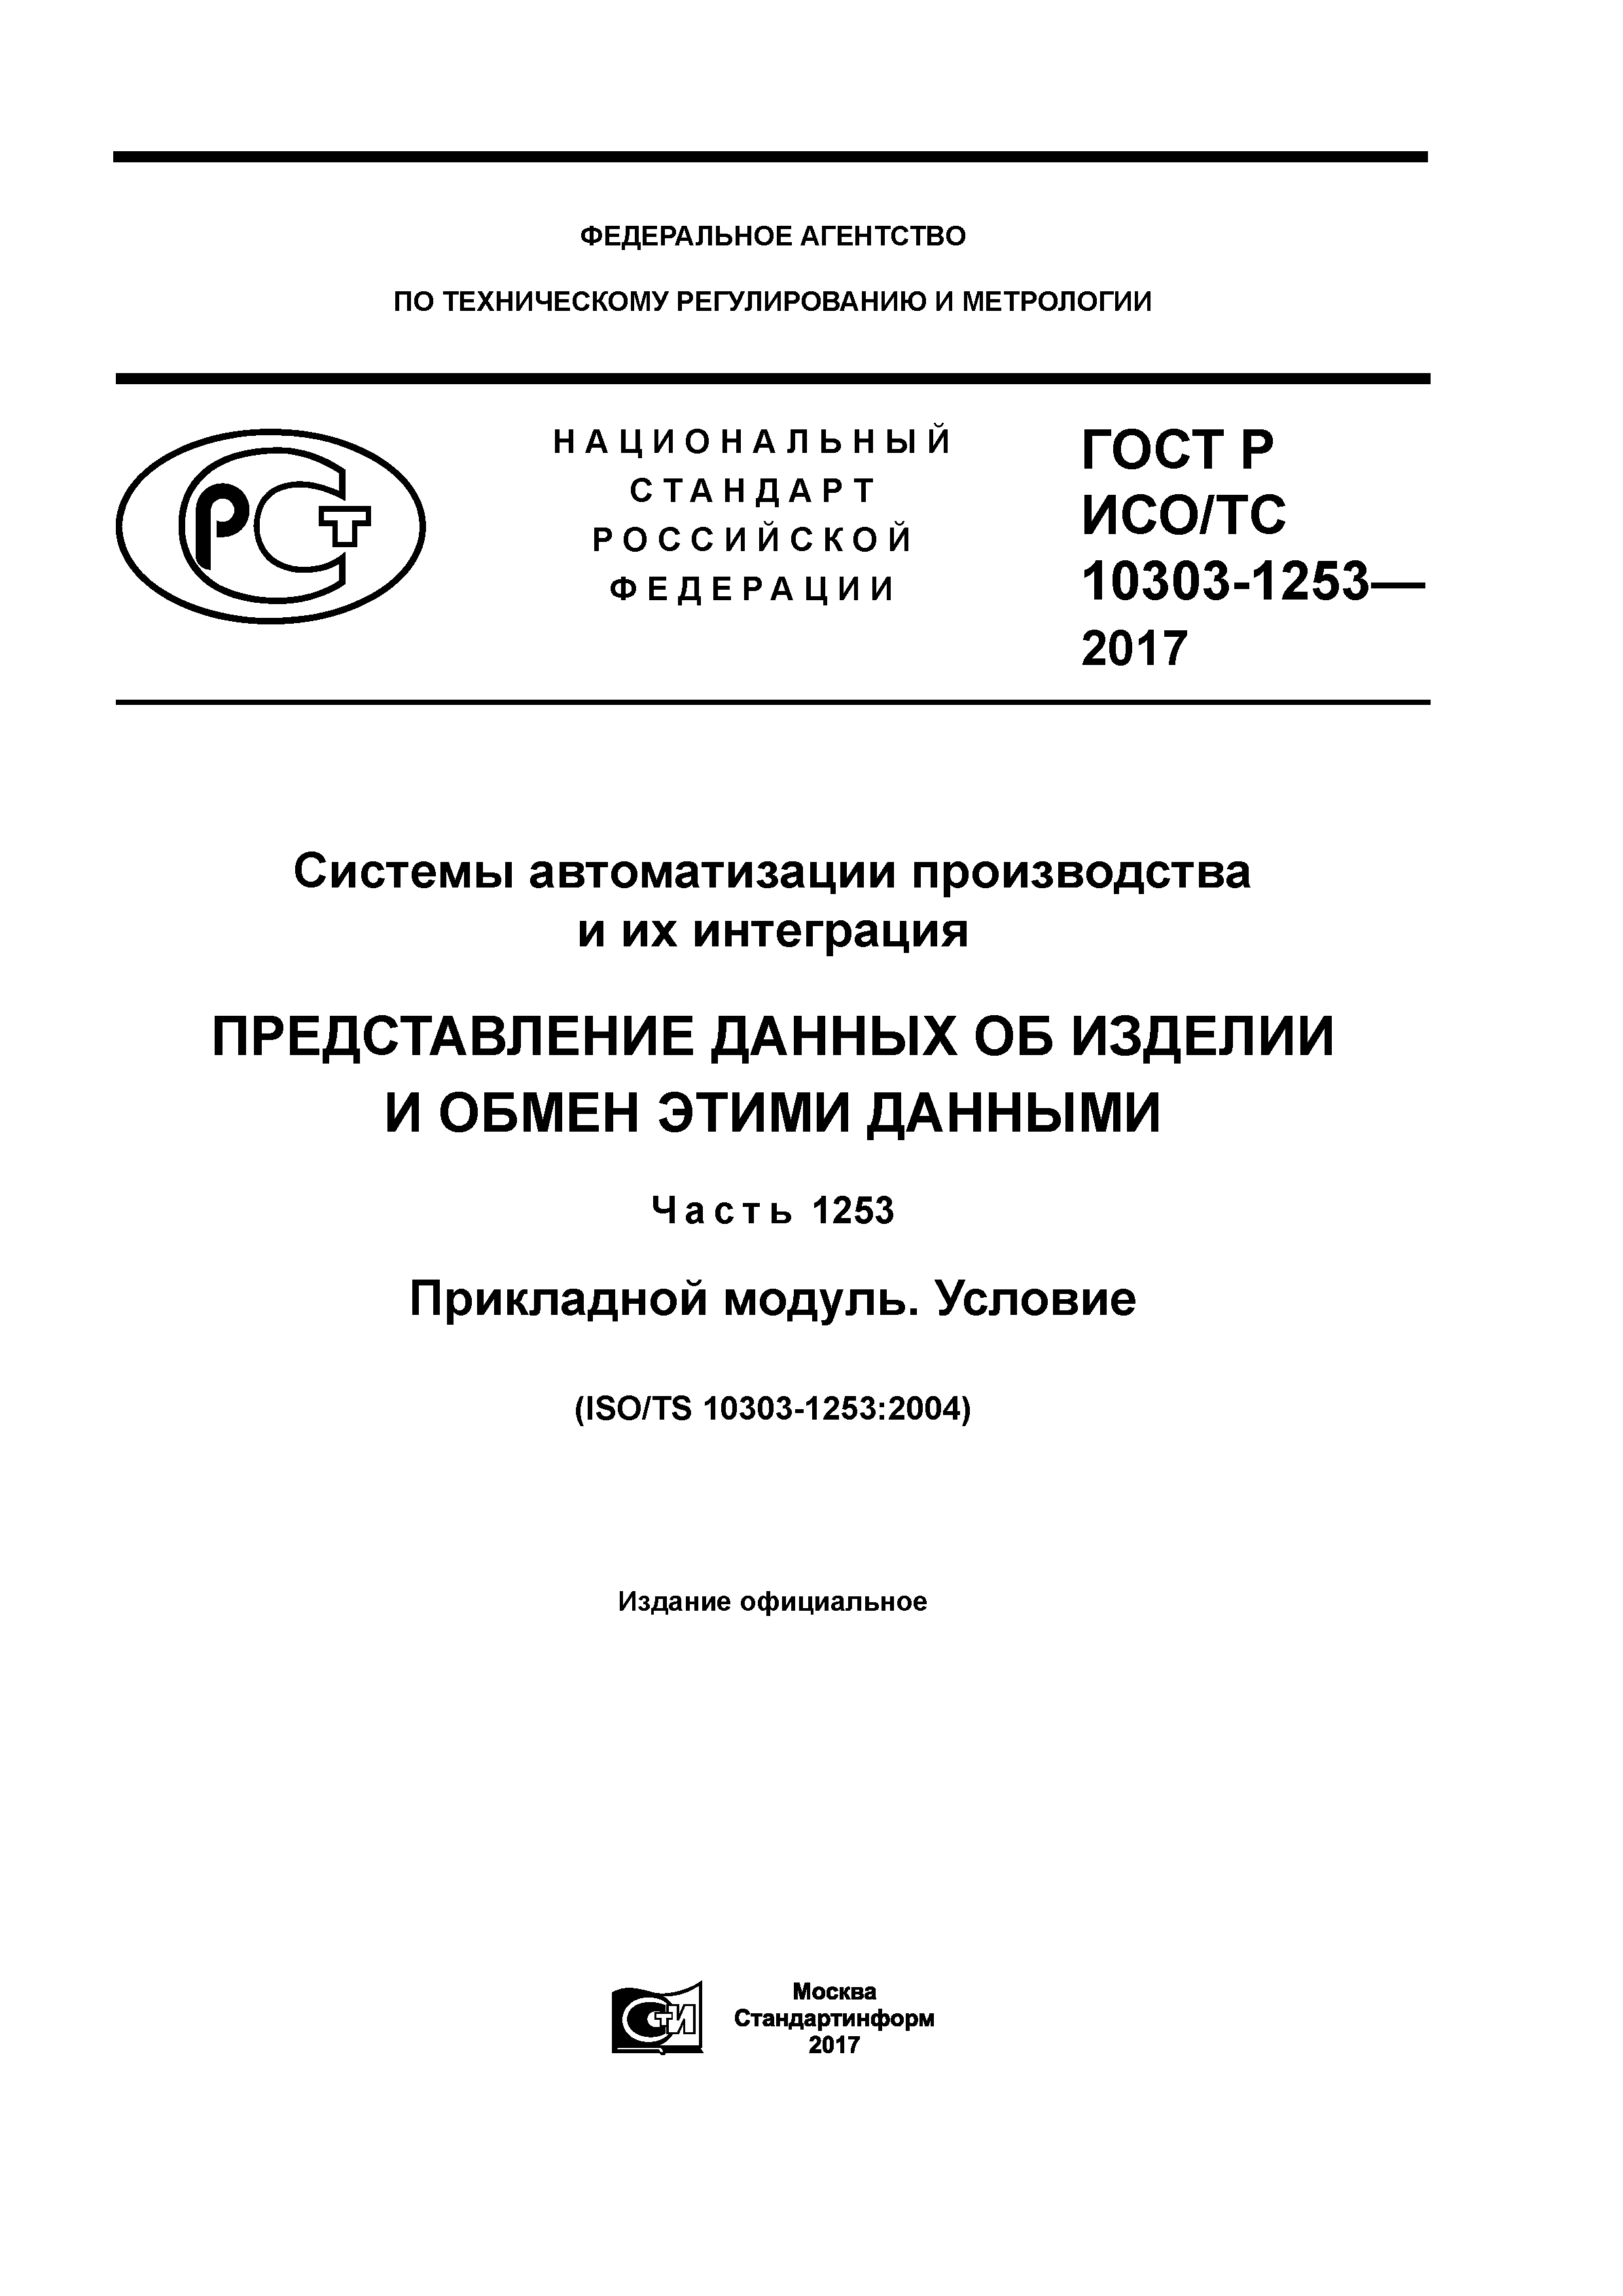 ГОСТ Р ИСО/ТС 10303-1253-2017